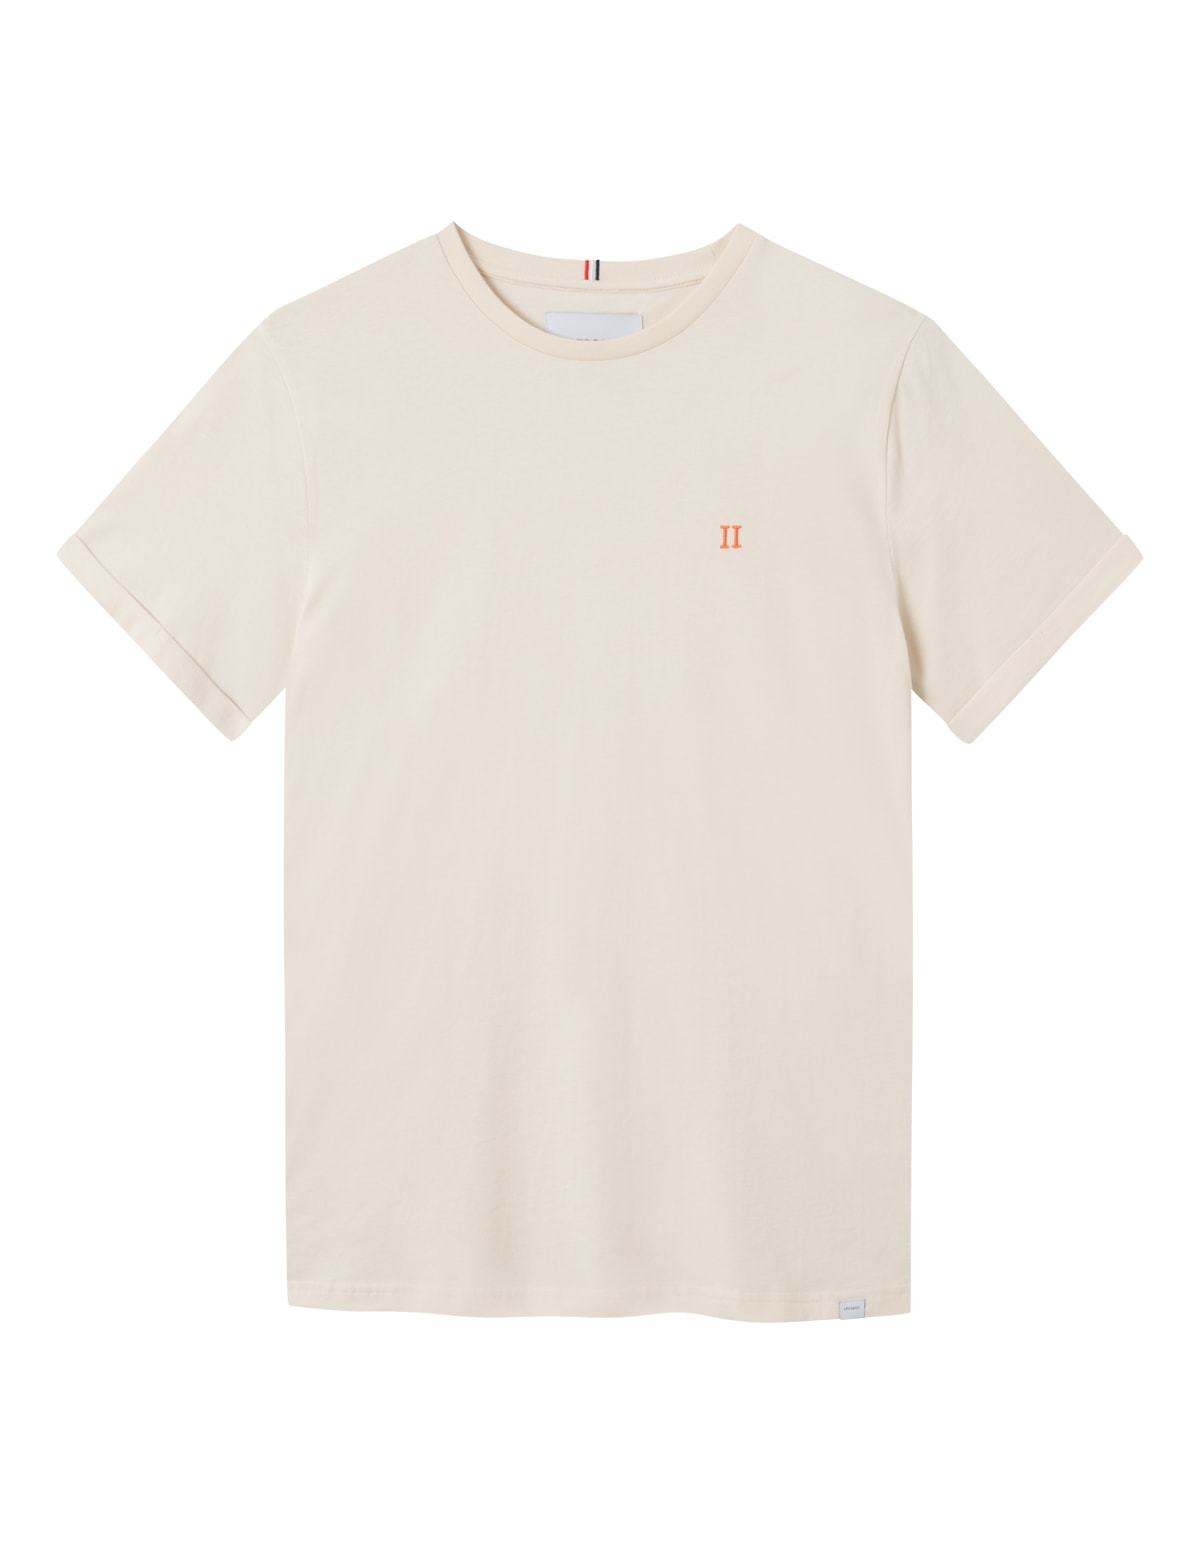  Nørregaard T-shirt, Ivory Orange, S